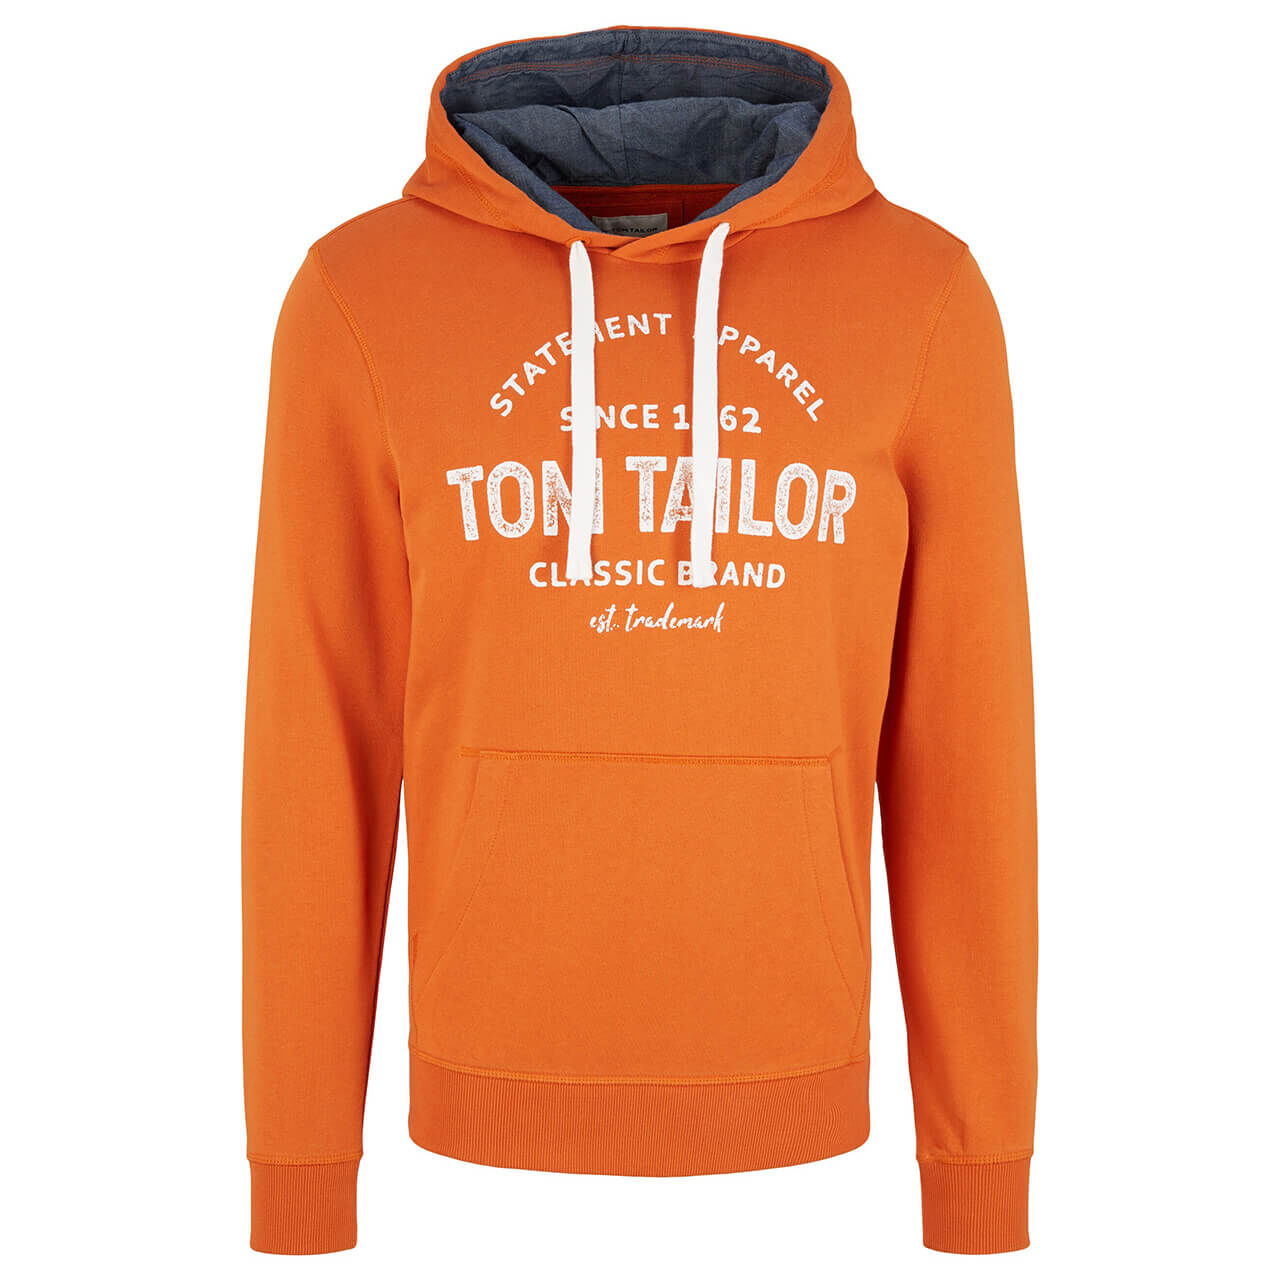 Tom Tailor Herren Hoodie Sweatshirt gold flame orange